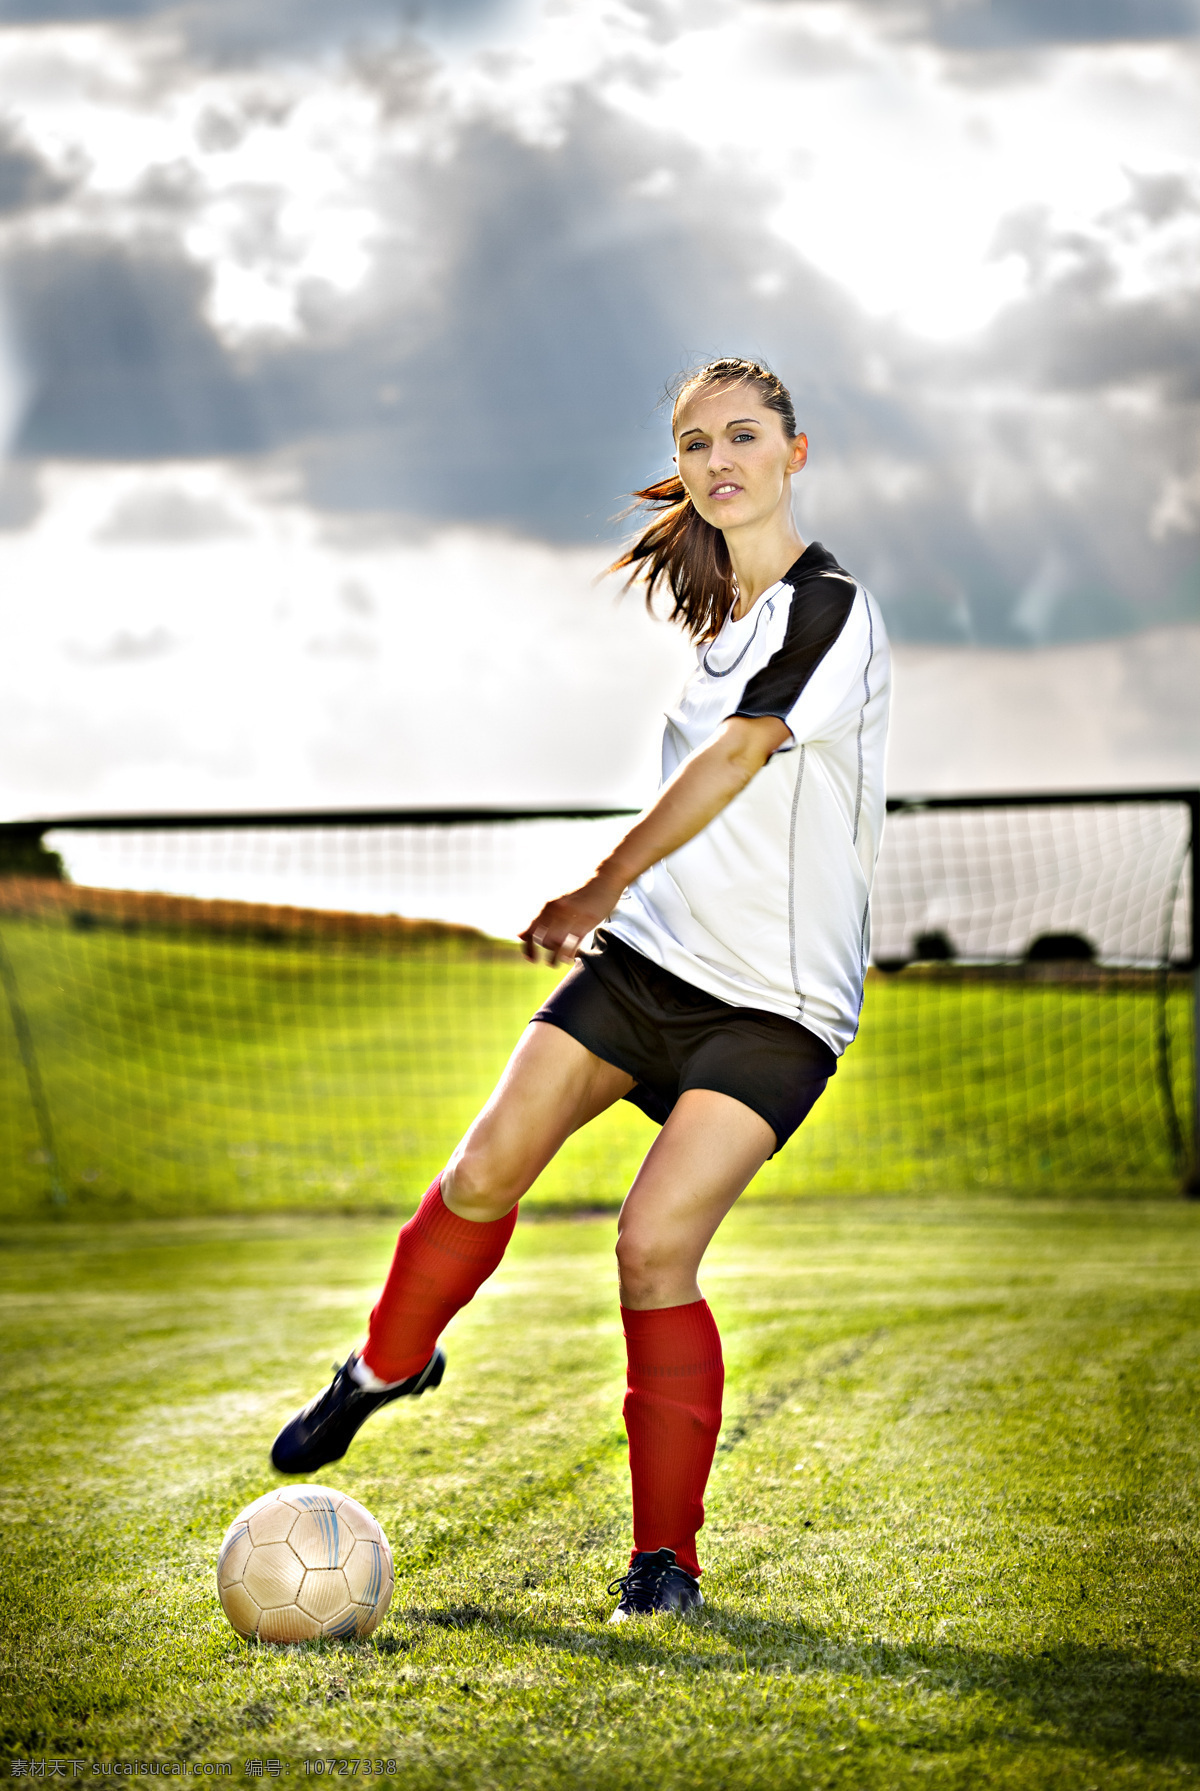 踢 足球 美女 运动员 体育运动 健身 足球运动 美女运动员 足球场 生活百科